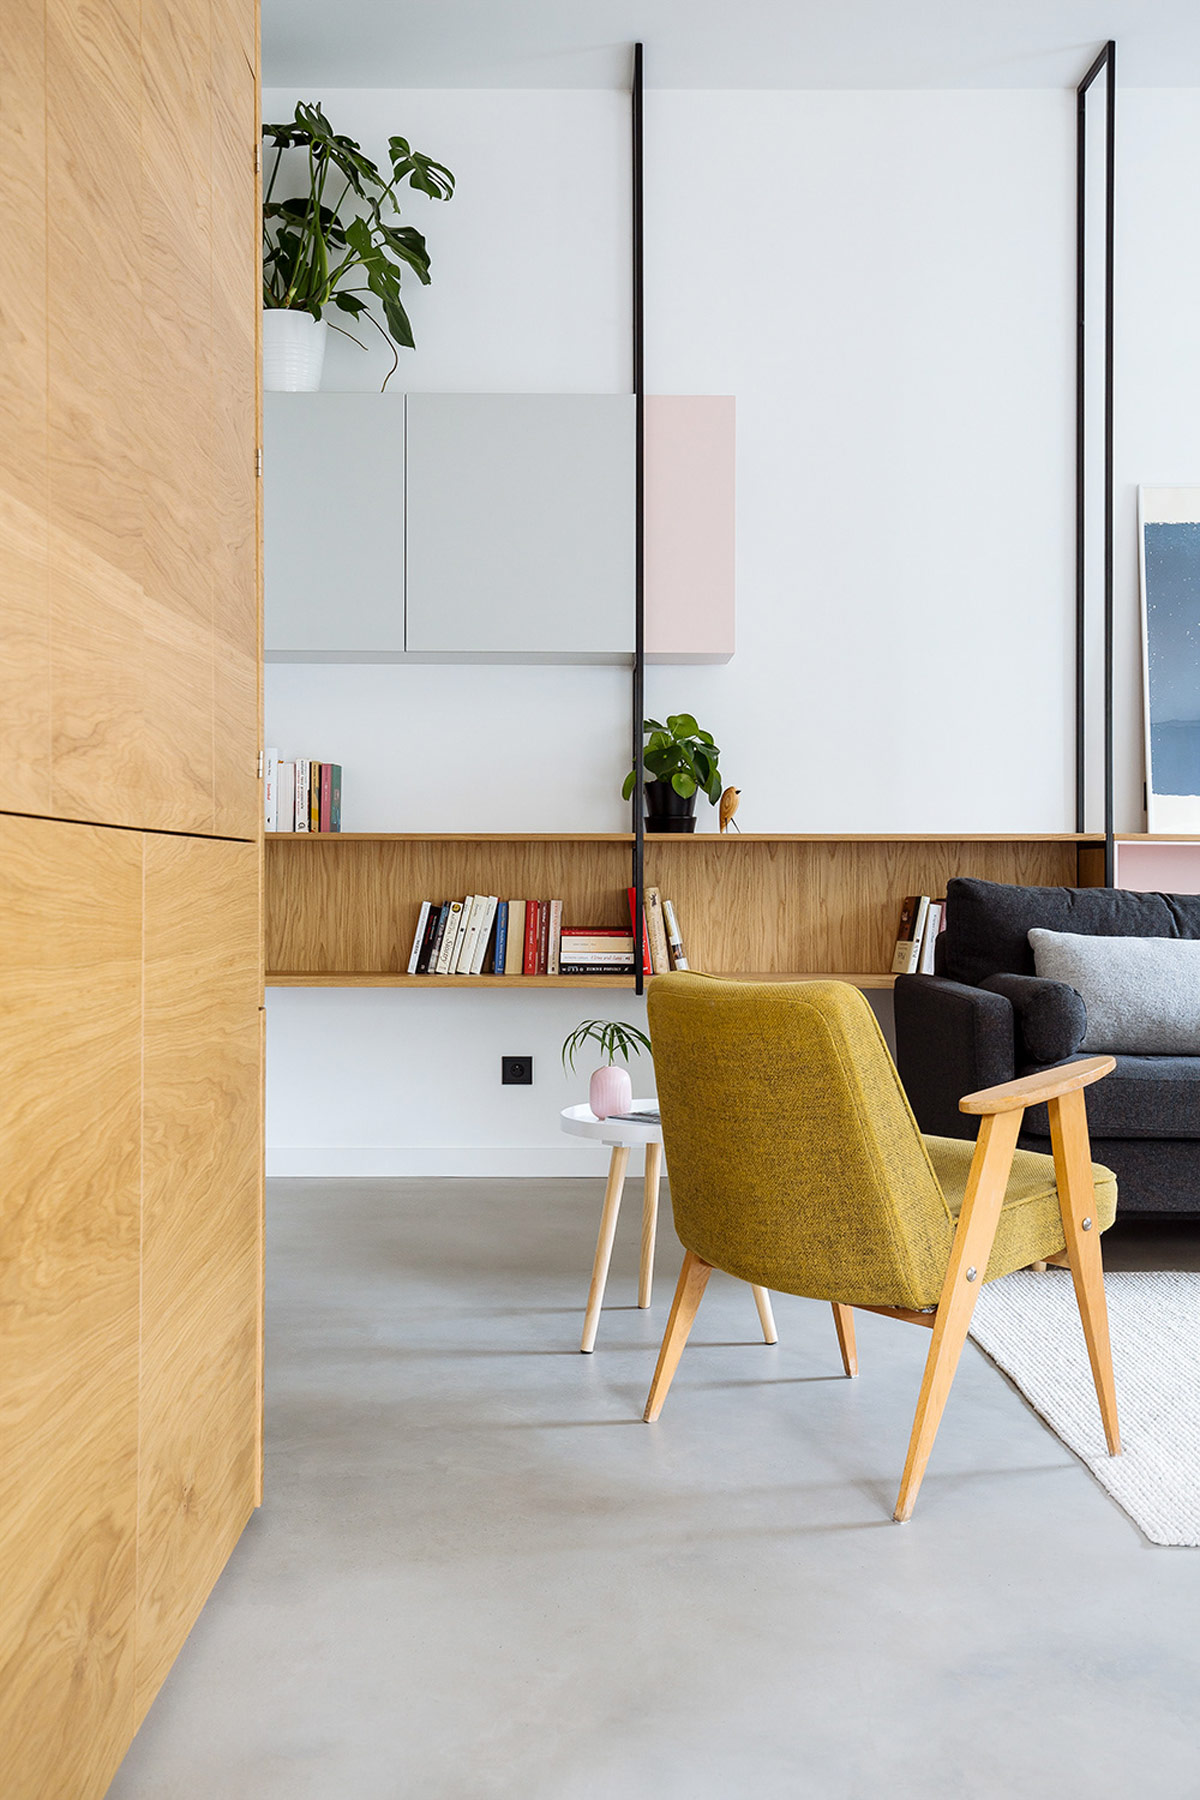 北欧风格室内家装案例效果图-客厅椅子